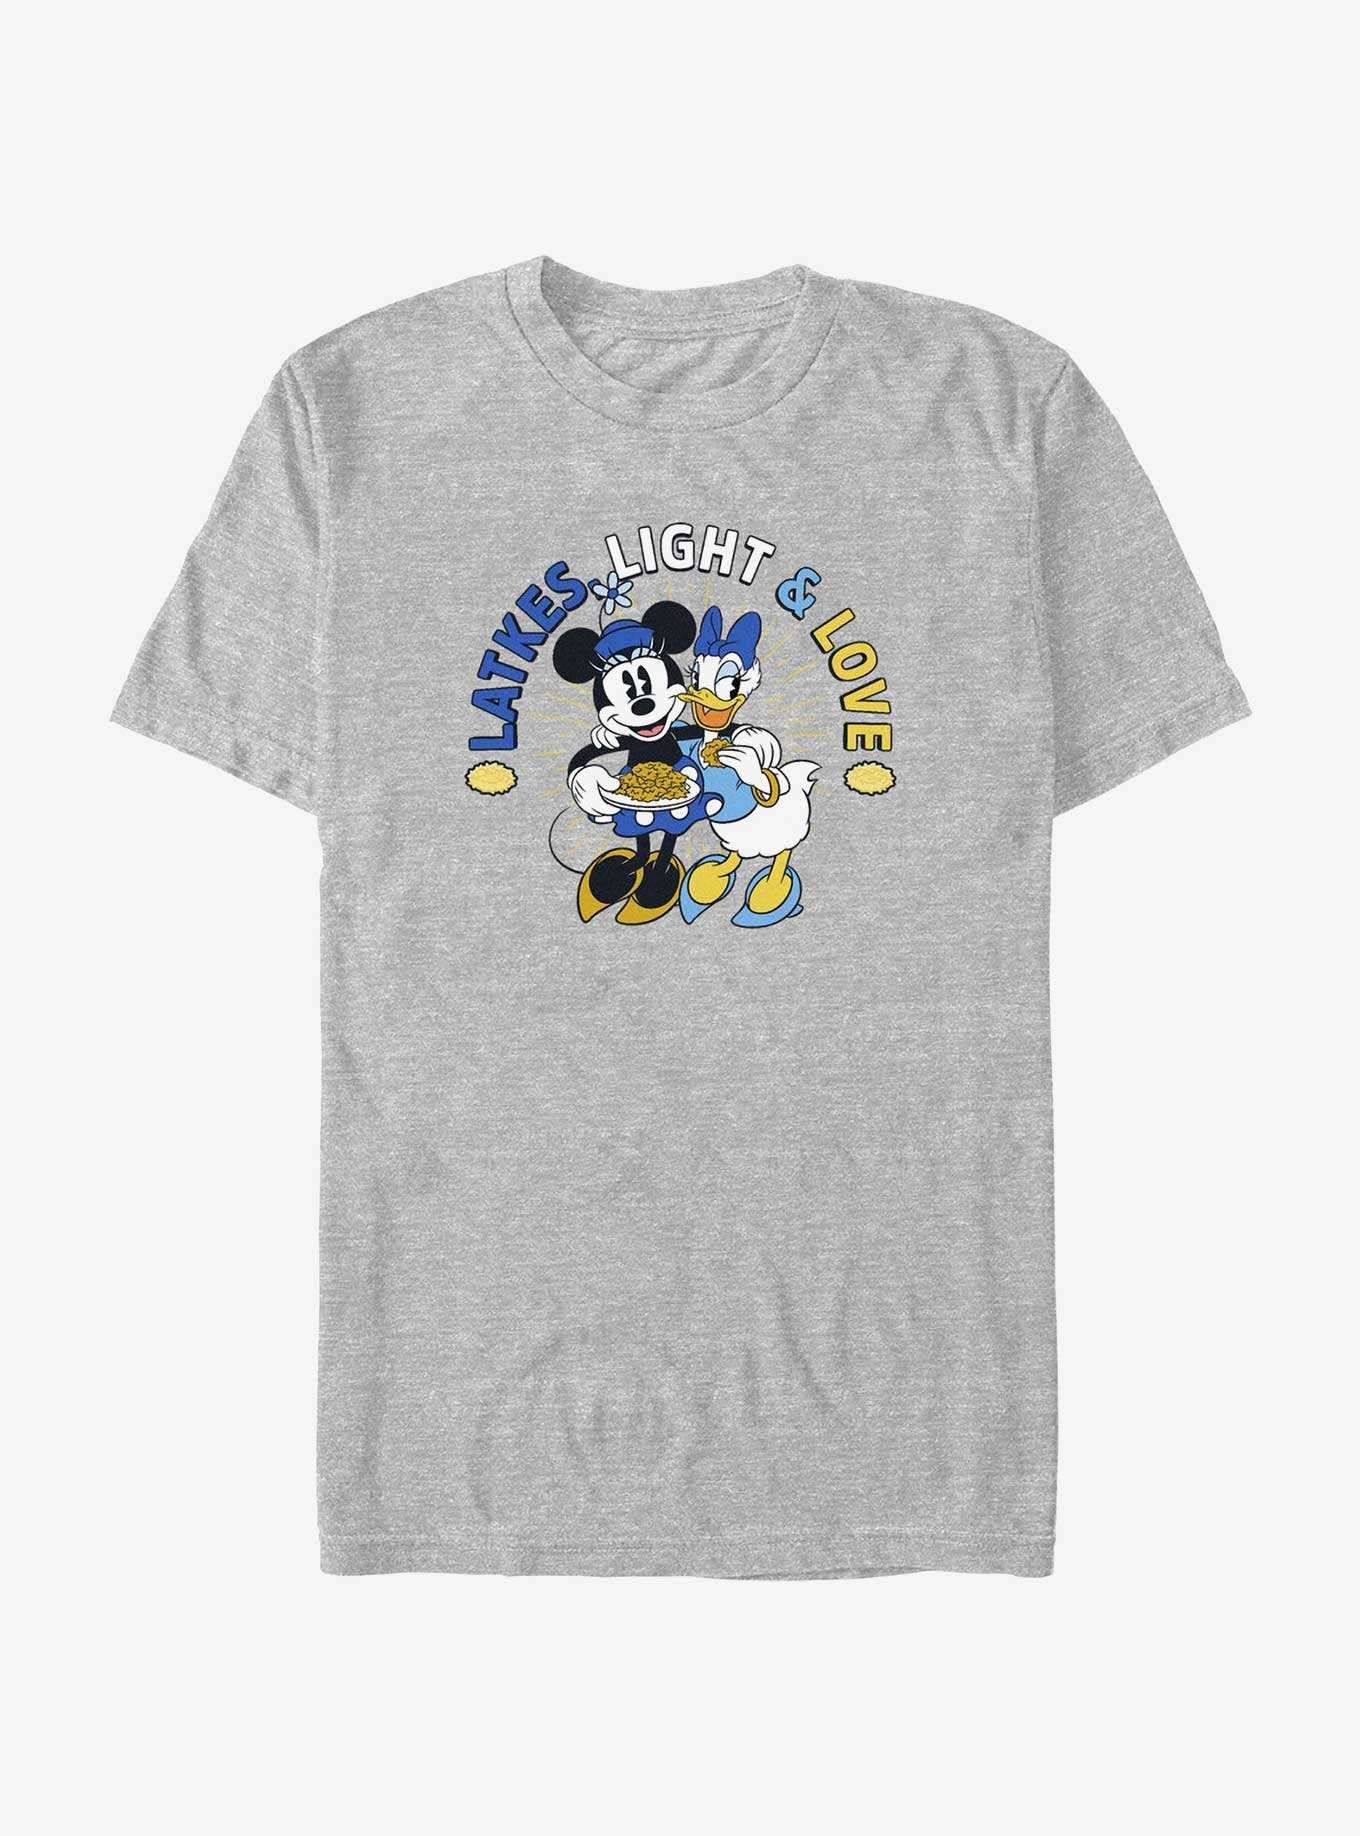 Disney Mickey Mouse Latkes Light & Love Minnie and Daisy T-Shirt, , hi-res